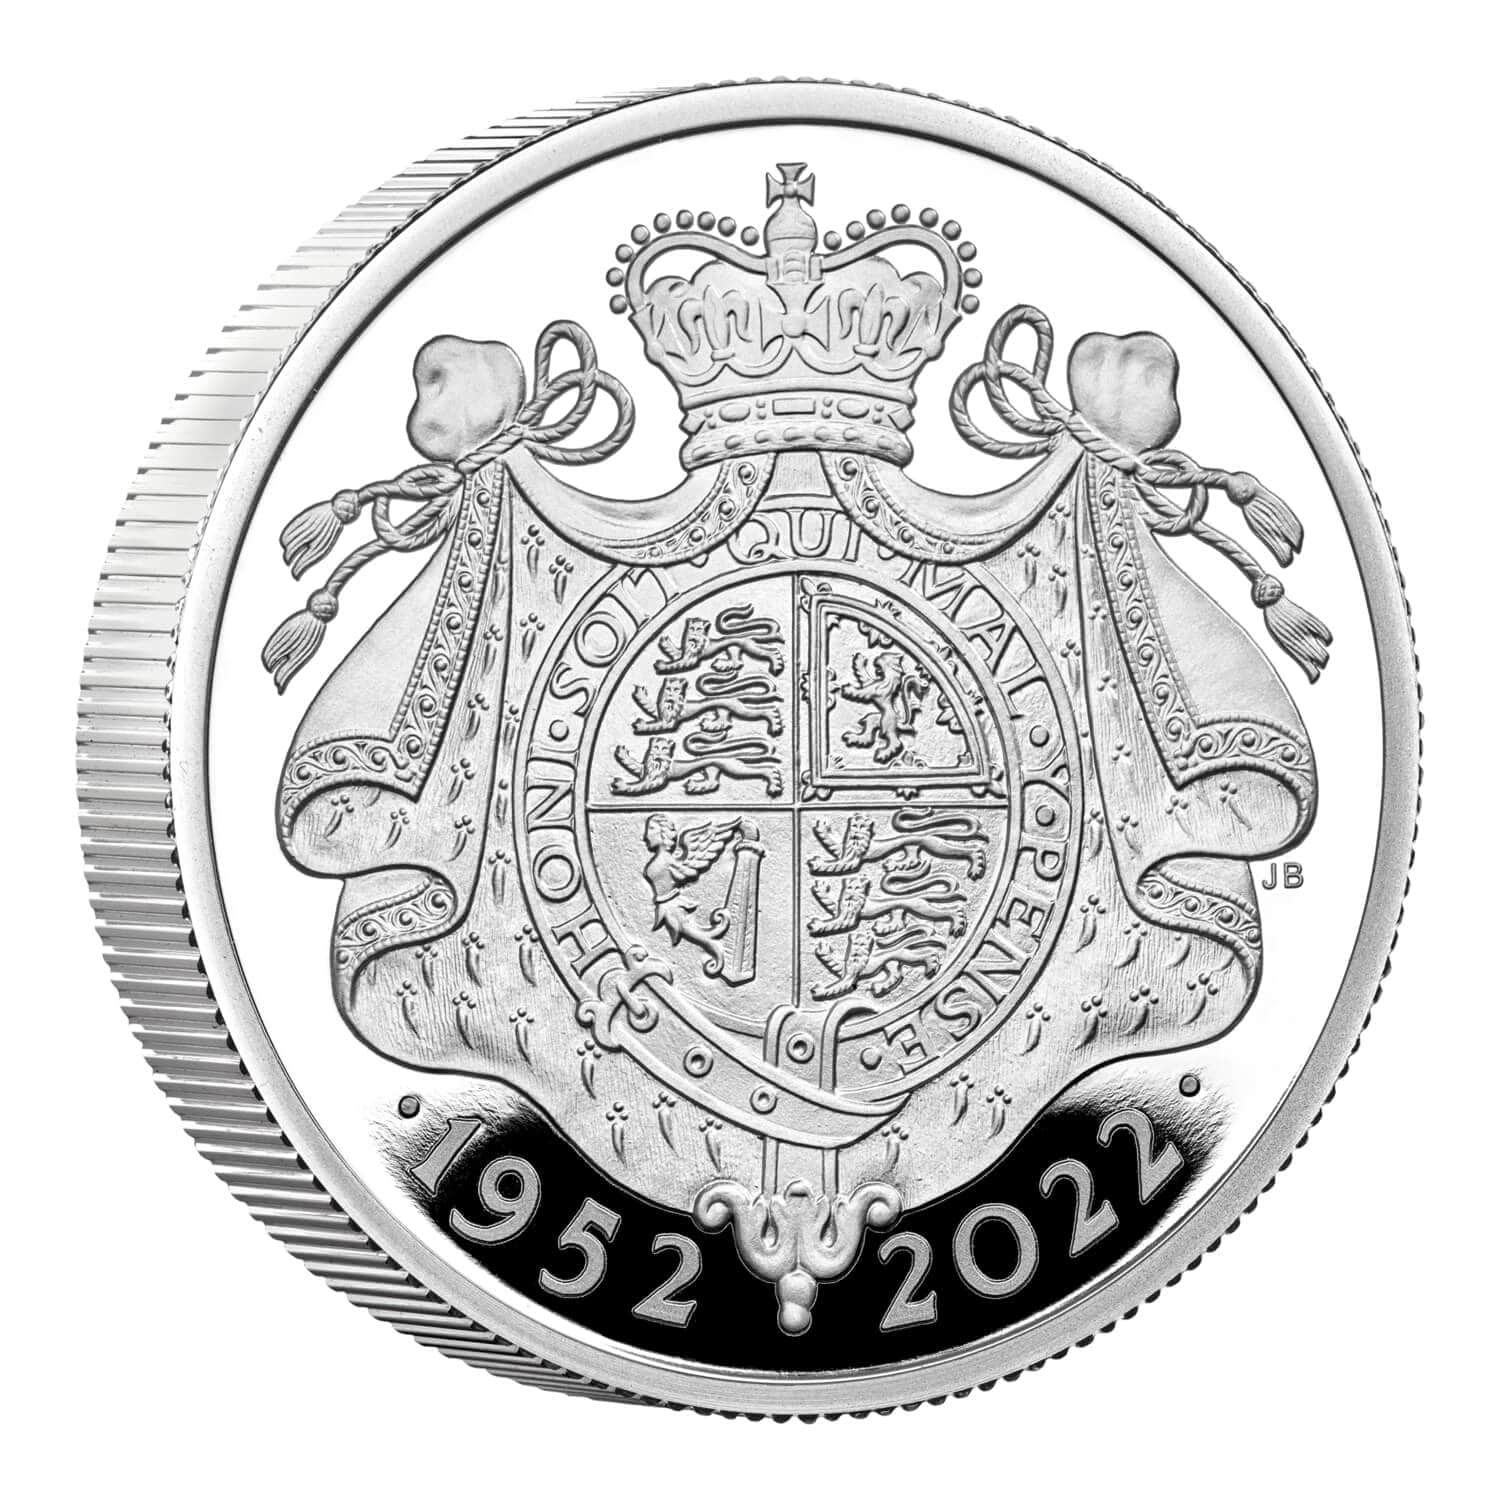 エリザベス女王在位70年プラチナジュビリー銀貨